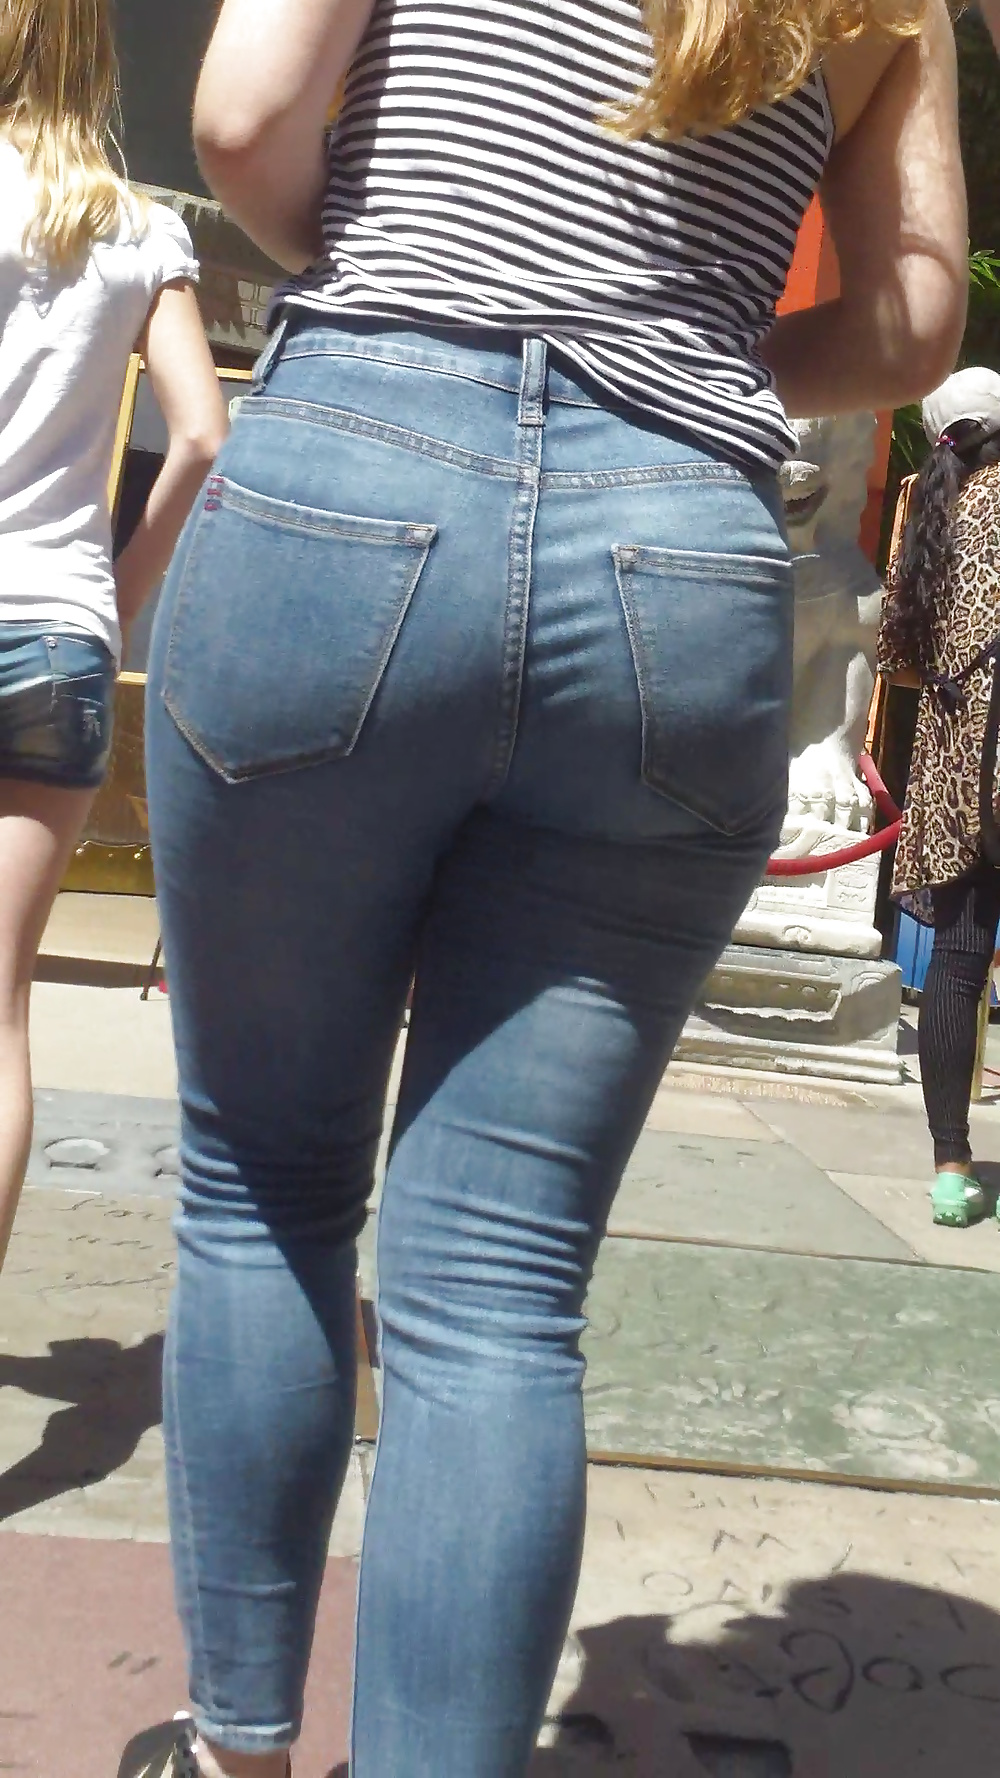 Popular teen girls ass & butt in jeans Part 5 #28734156